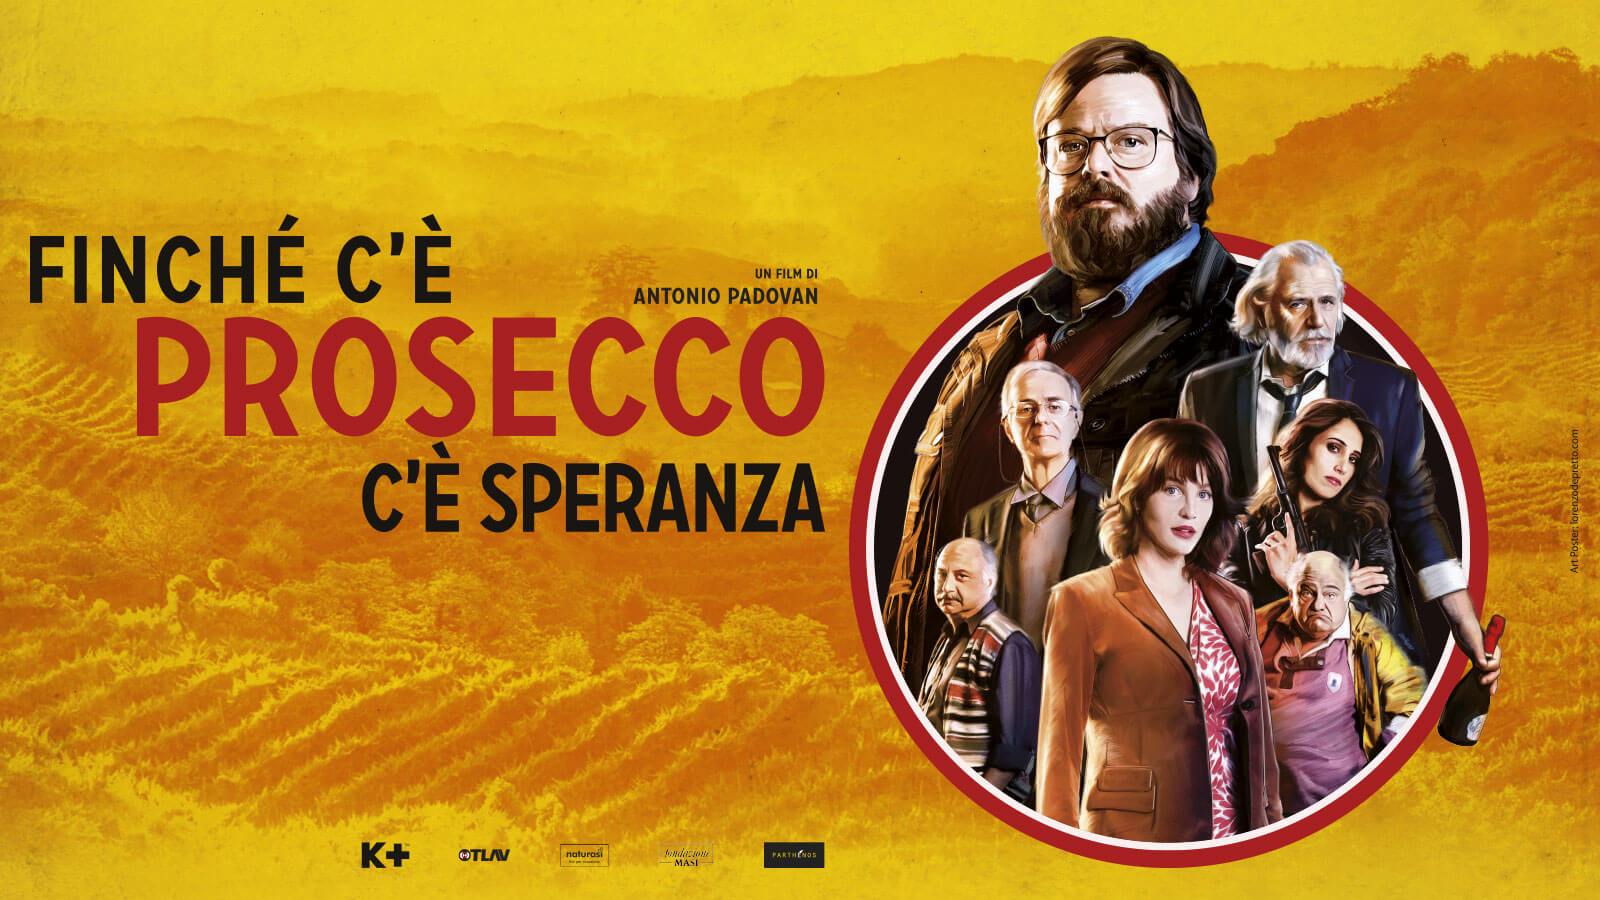 Prosecco: il tour country-chic ispirato al film “Finchè c’è Prosecco c’è Speranza” — Veneto Secrets